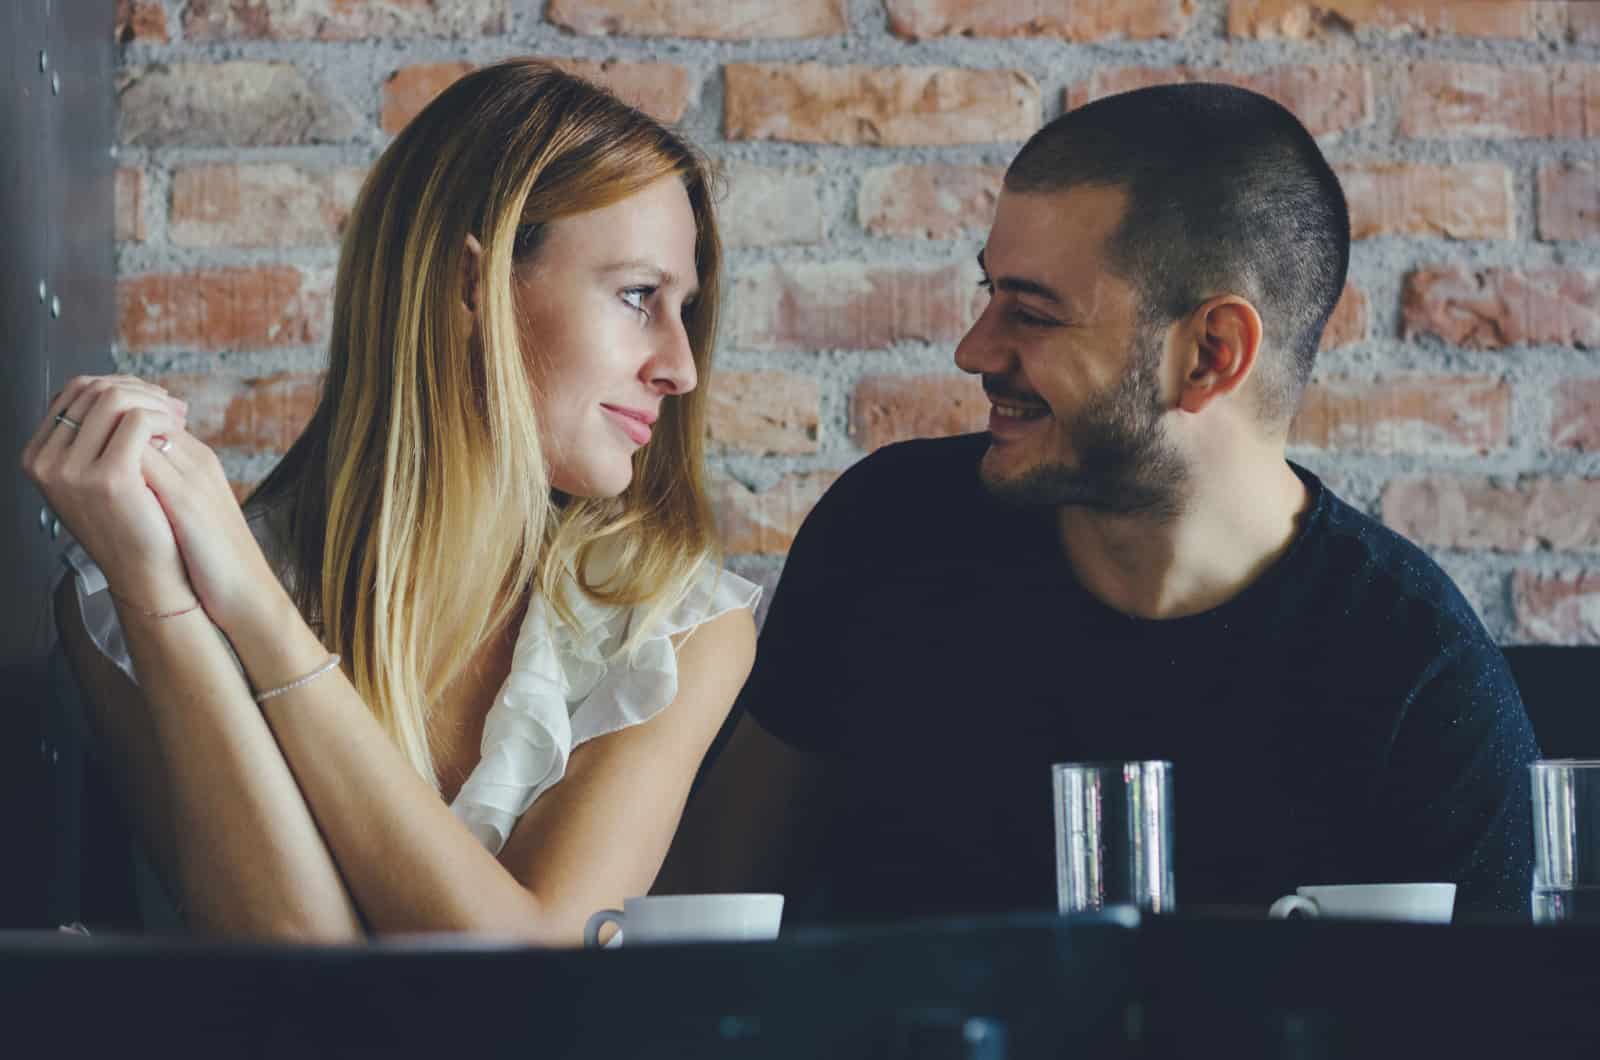 Mann und Frau lachen bei einem Date